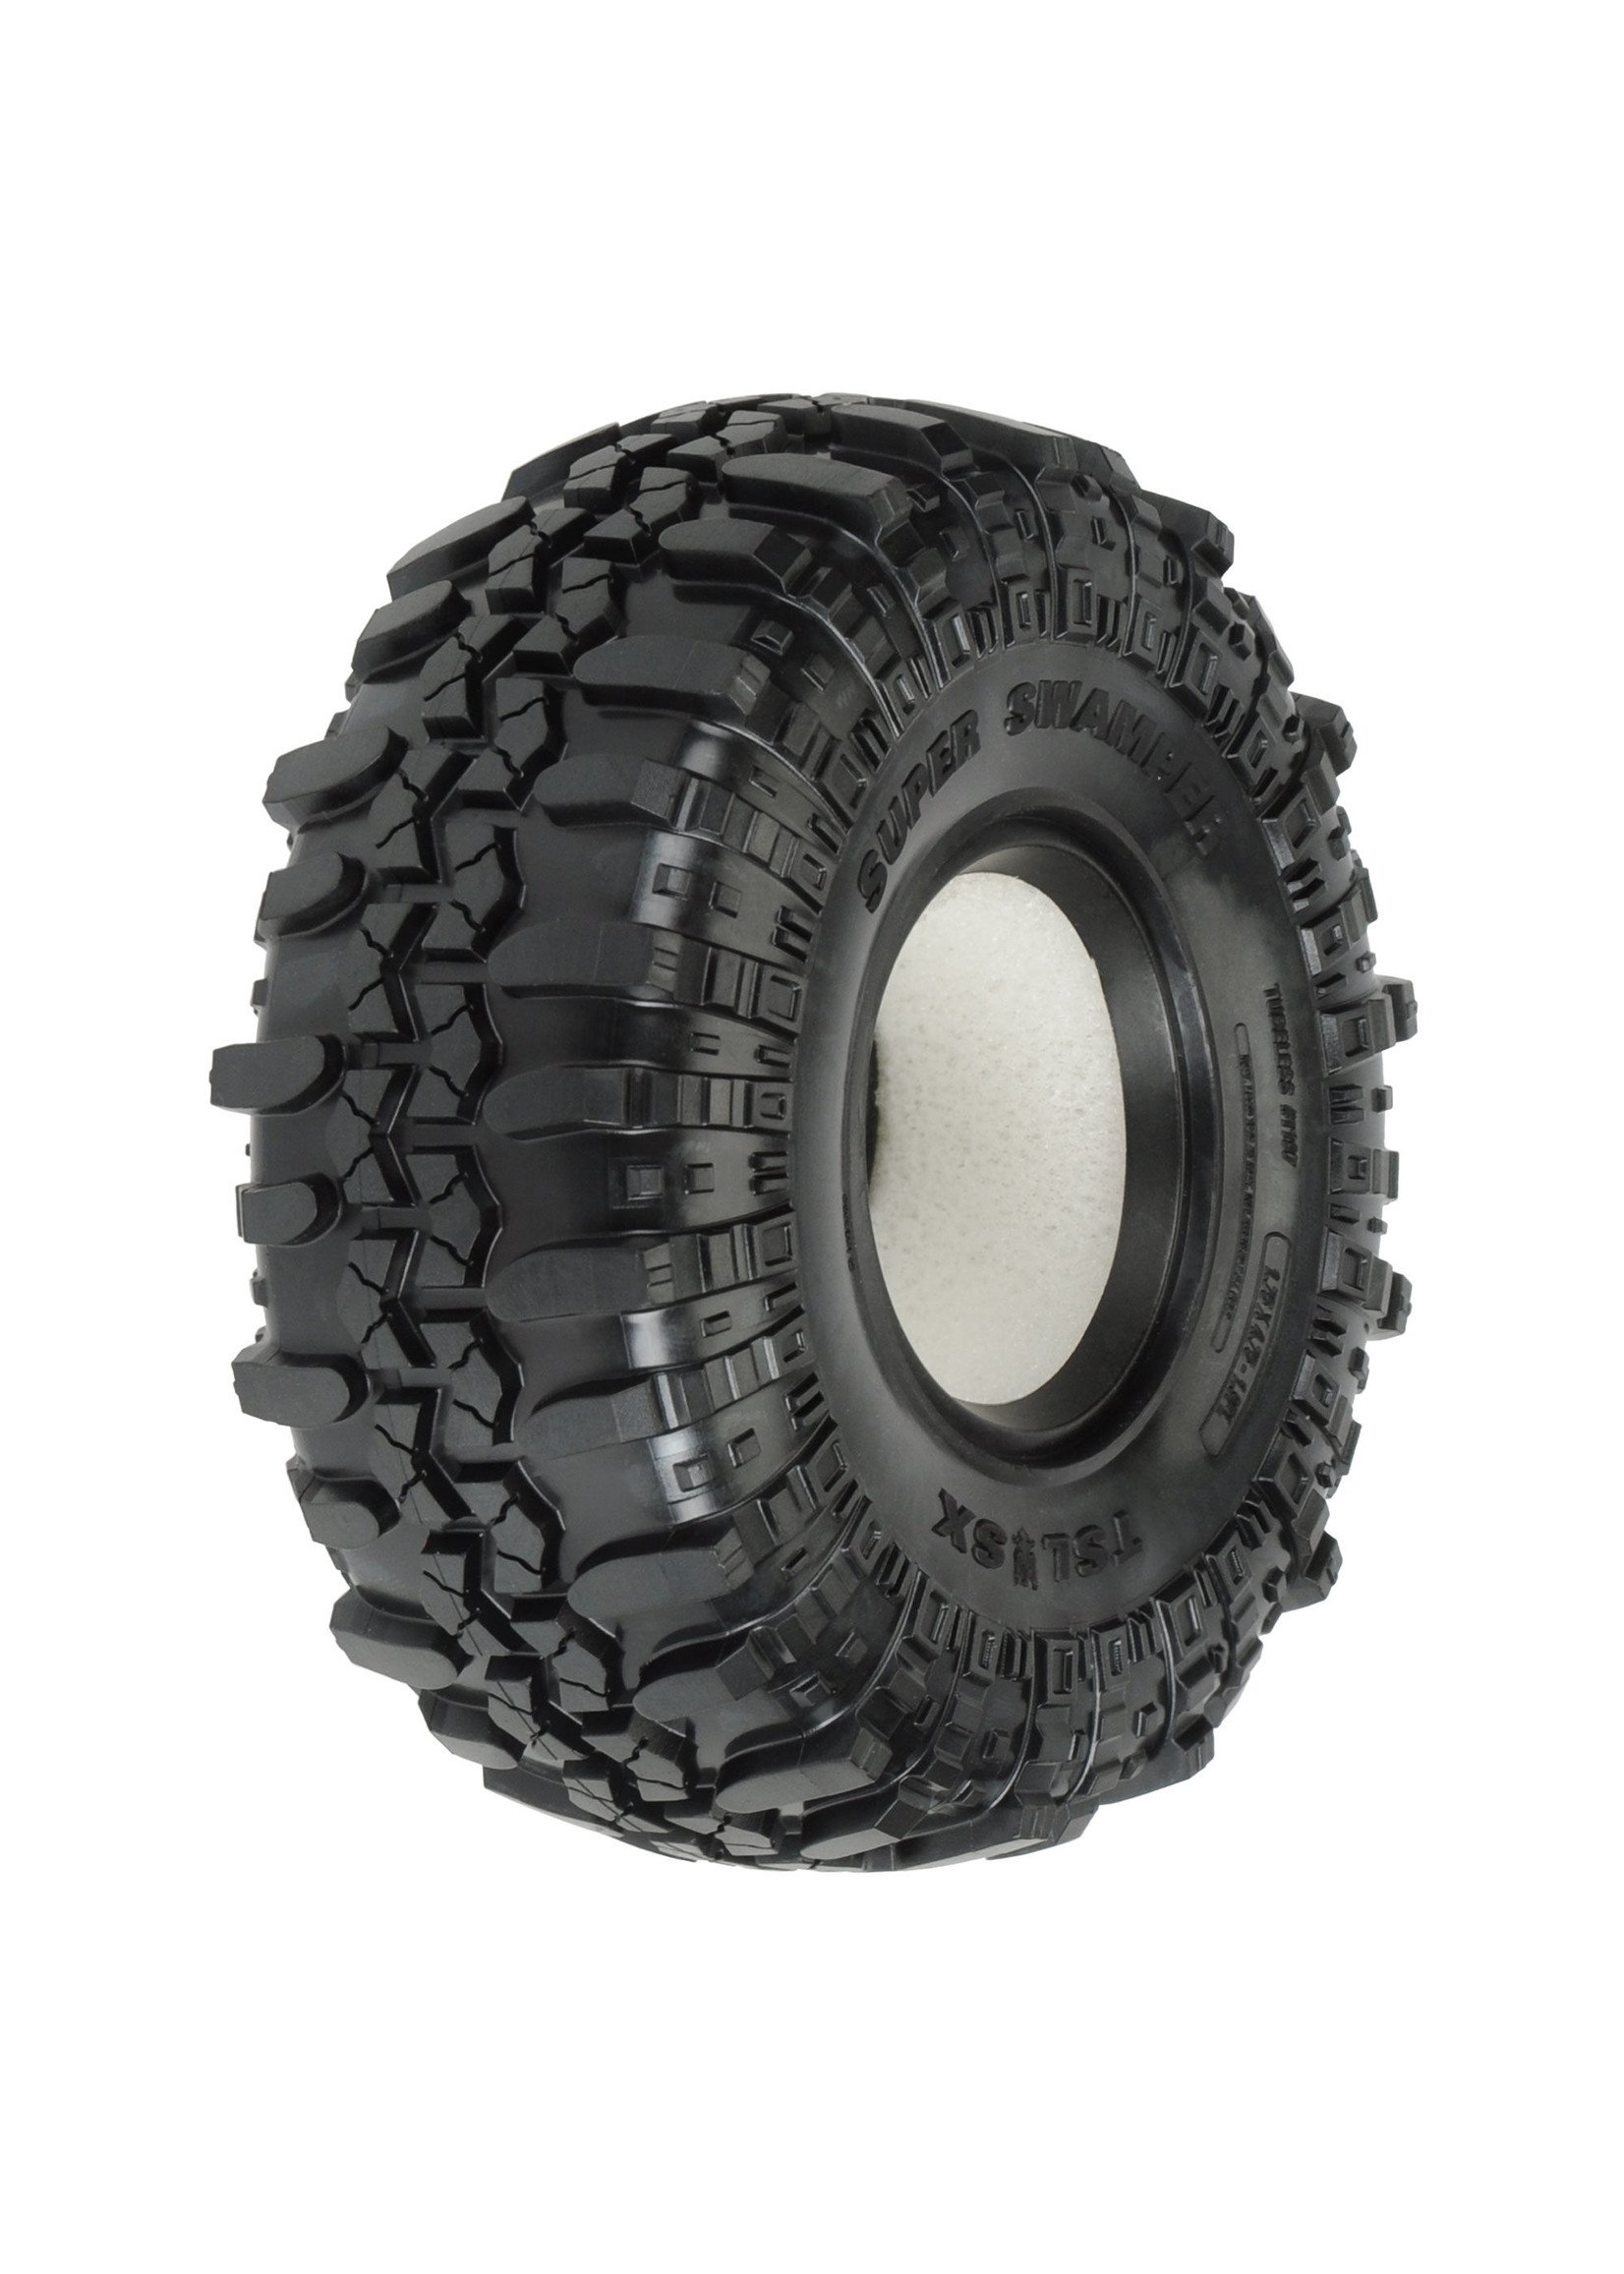 Pro-Line PRO119714 - 1/10 Interco Super Swamper XL G8 F/R 1.9" Rock Crawling Tires